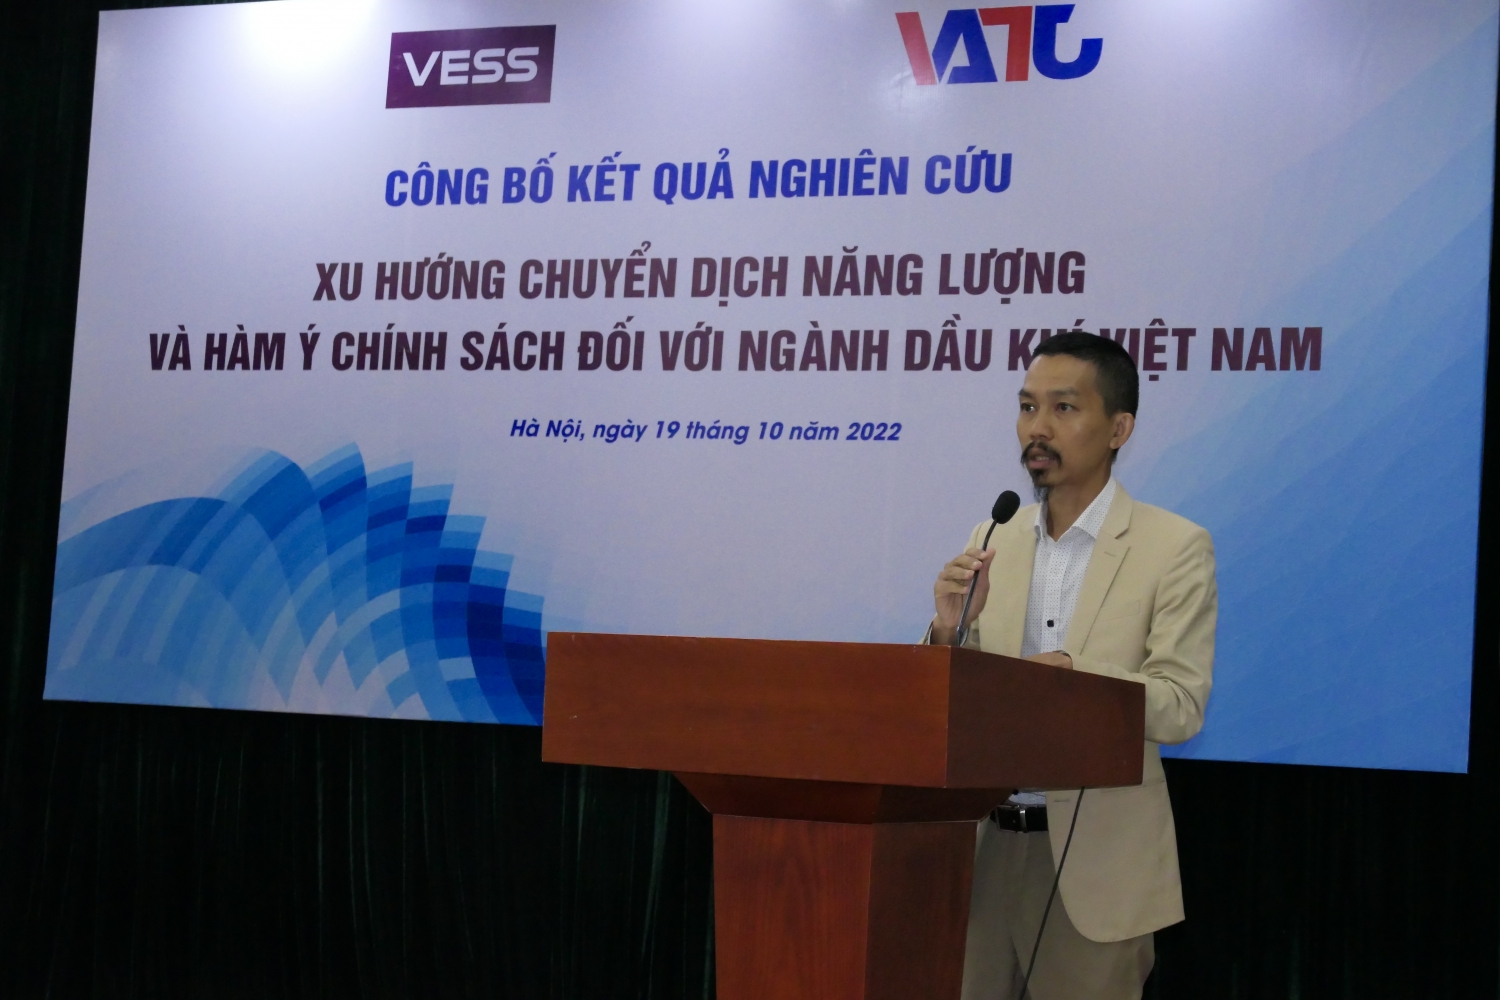 PGS.TS. Nguyễn Đức Thành, Giám đốc, Trung tâm Nghiên cứu Kinh tế và Chiến lược Việt Nam (VESS)